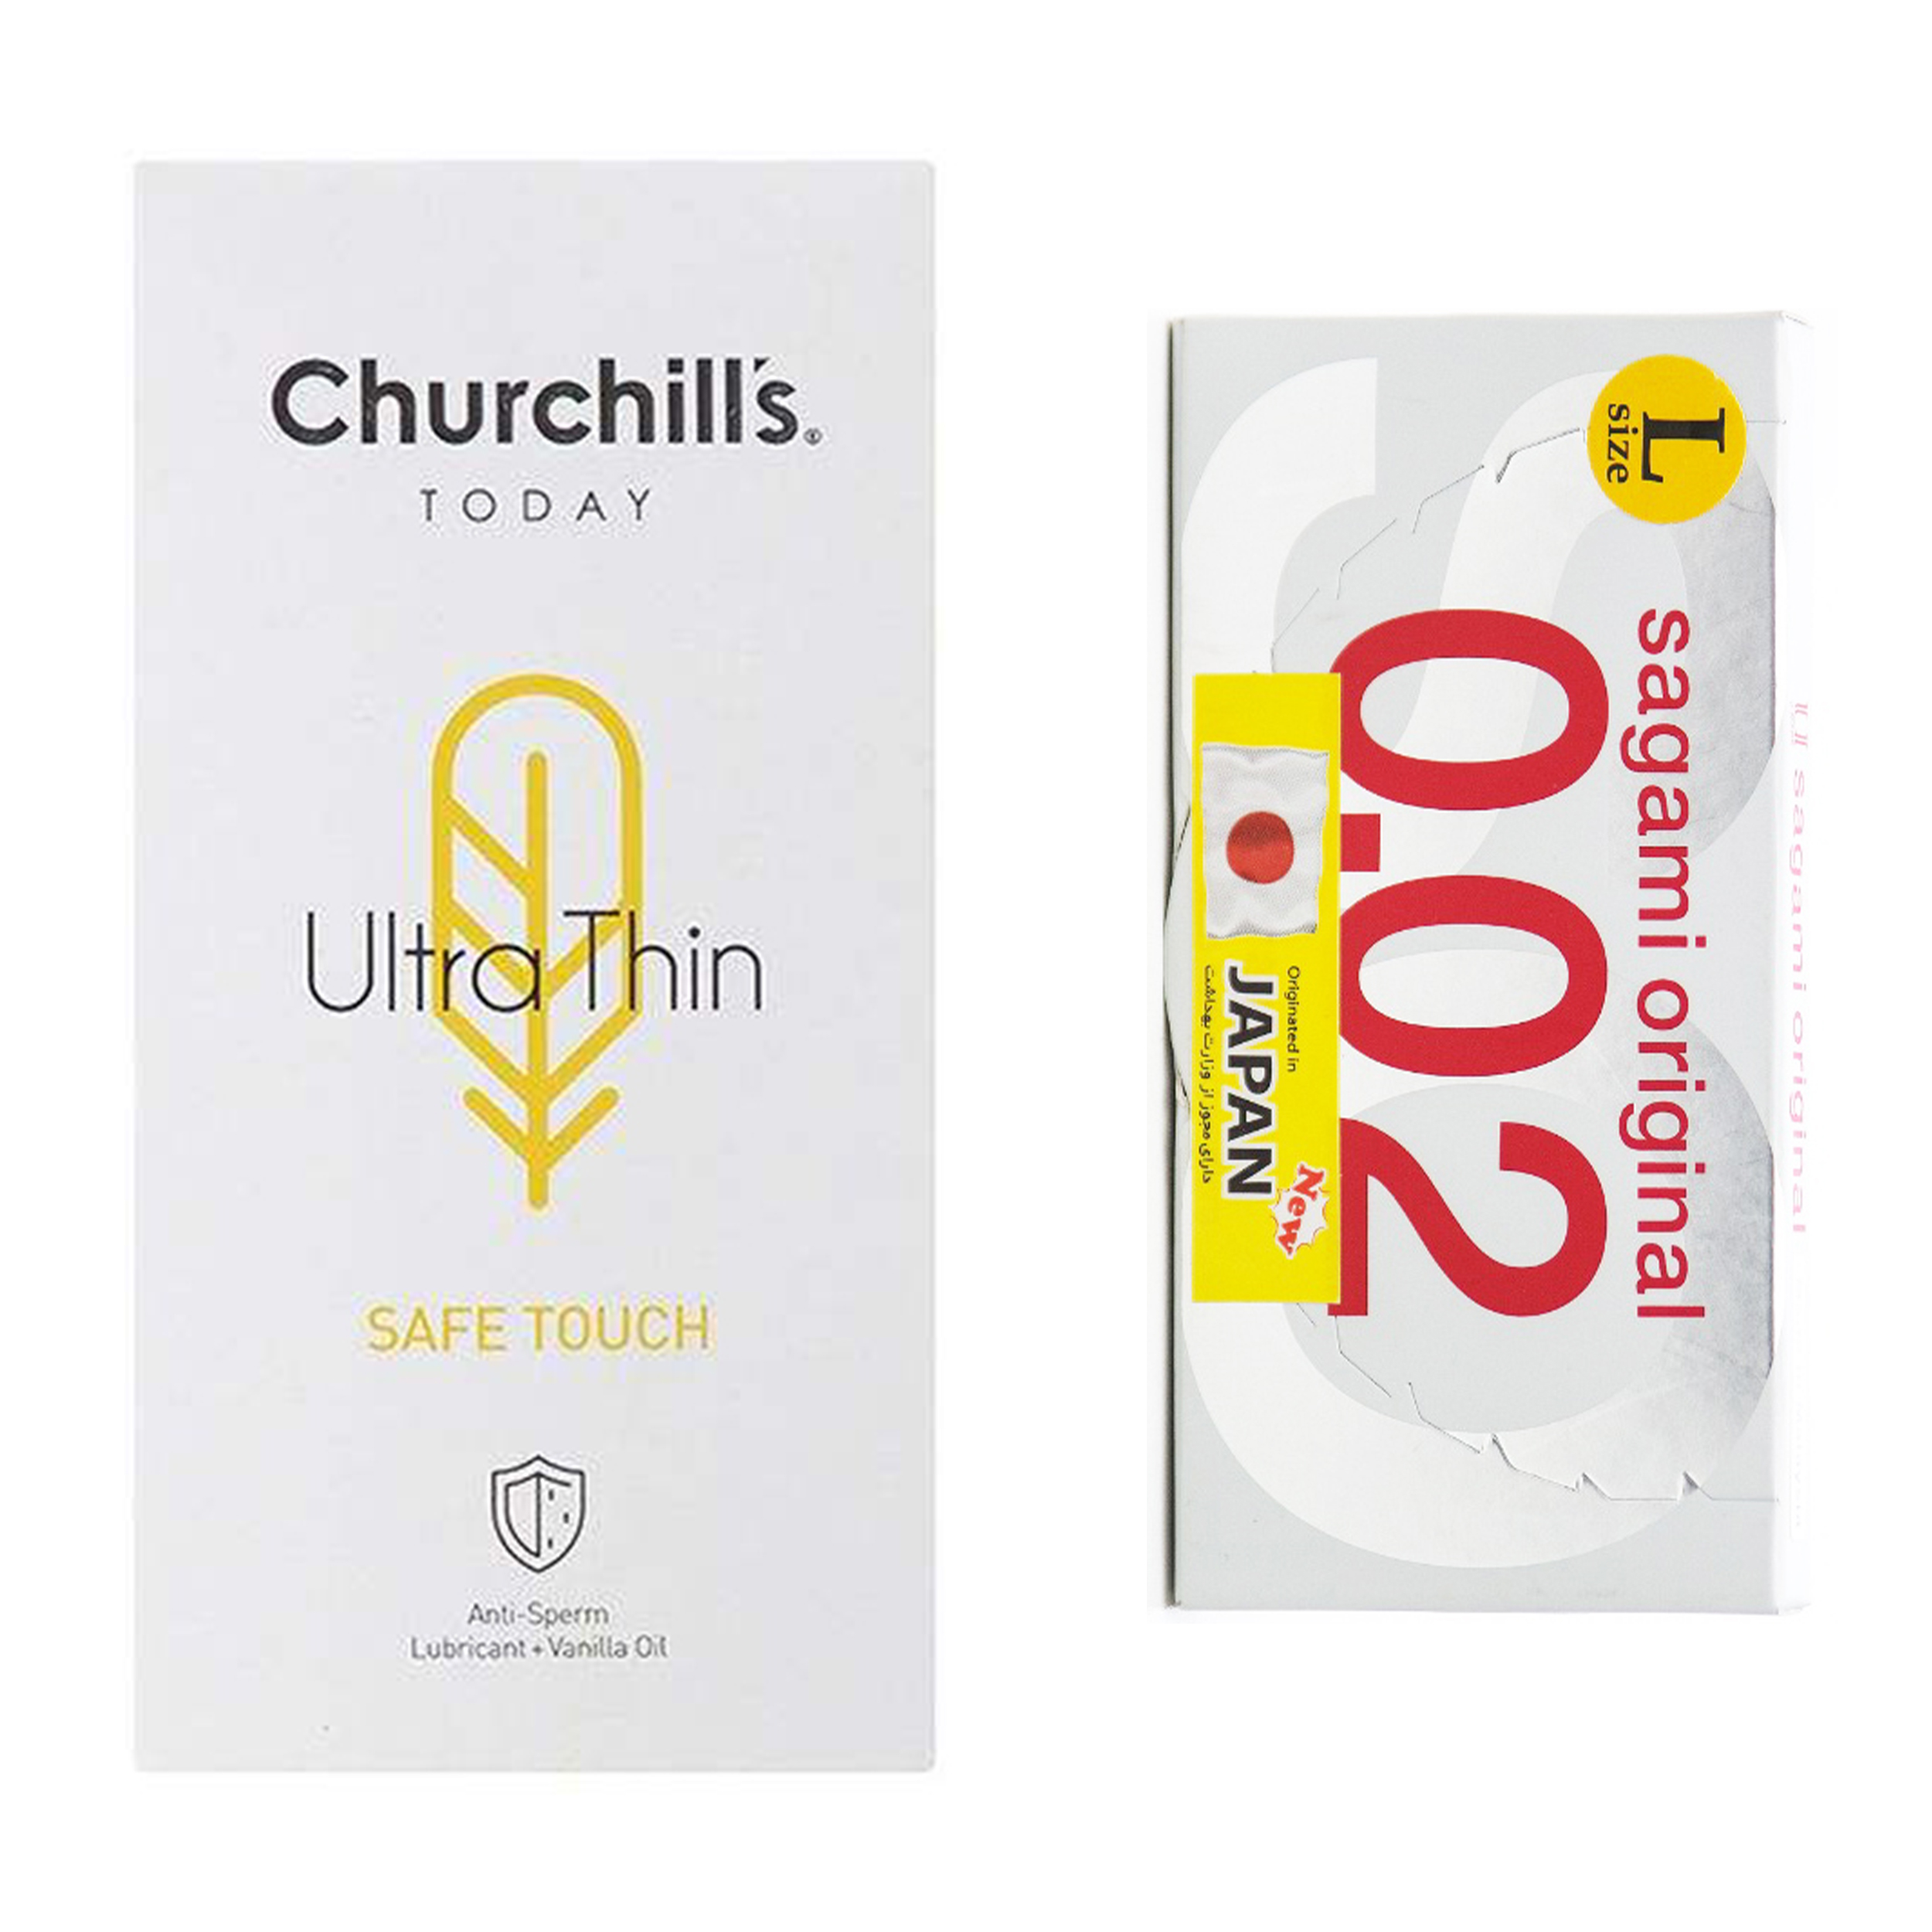 کاندوم چرچیلز مدل Safe Touch بسته 12 عددی به همراه کاندوم ساگامی کد 001 بسته 2 عددی